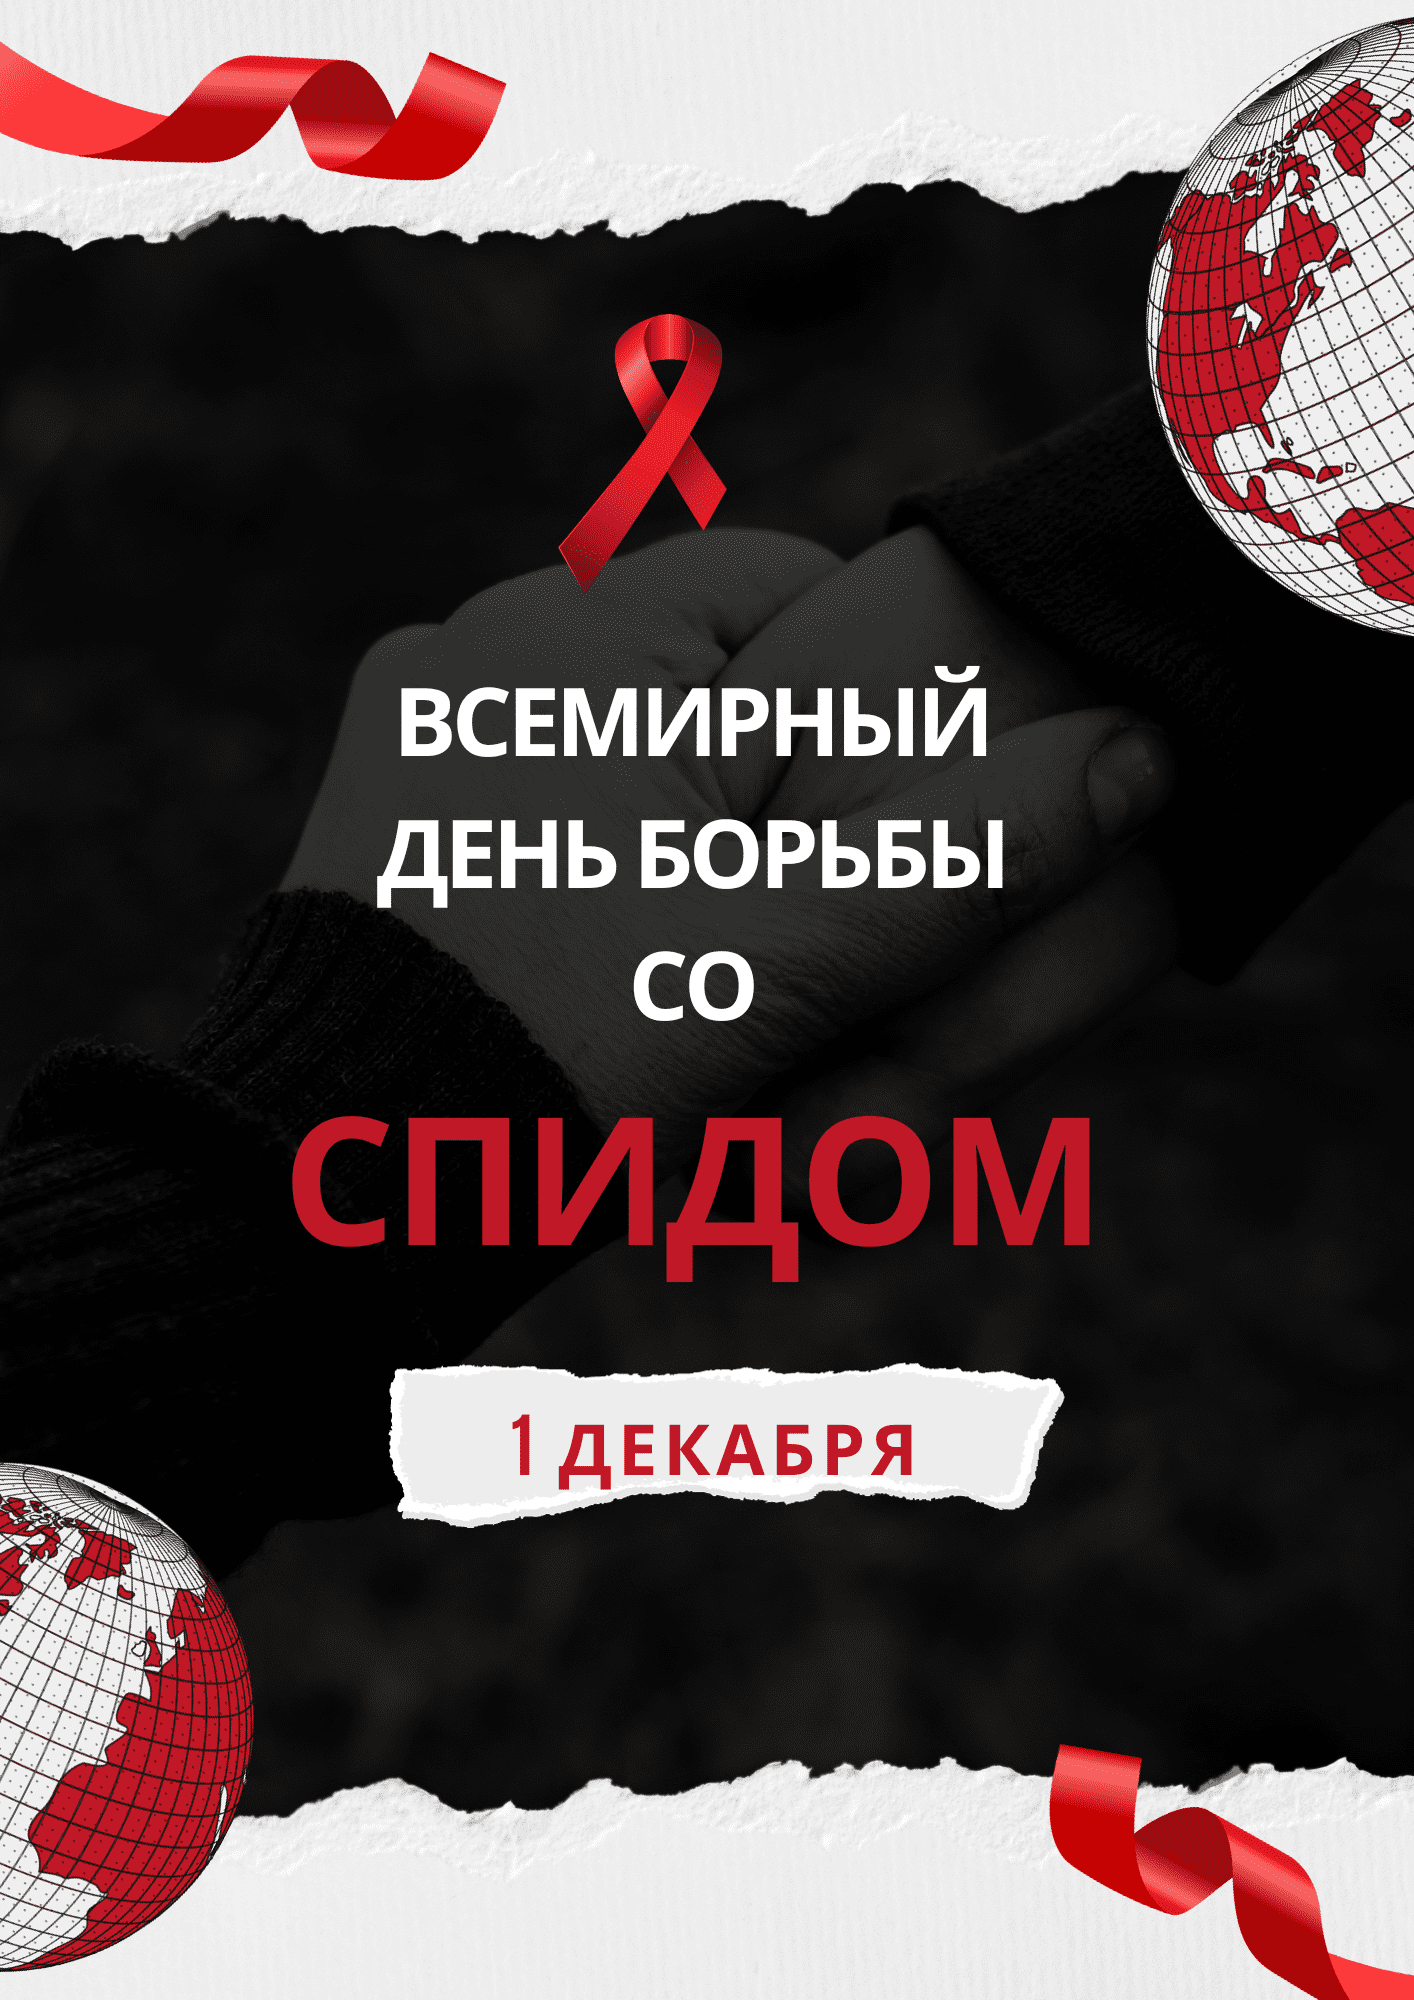 Сценарий мероприятия, посвящённого Всемирному Дню борьбы со СПИДом «Мы против СПИДа!»